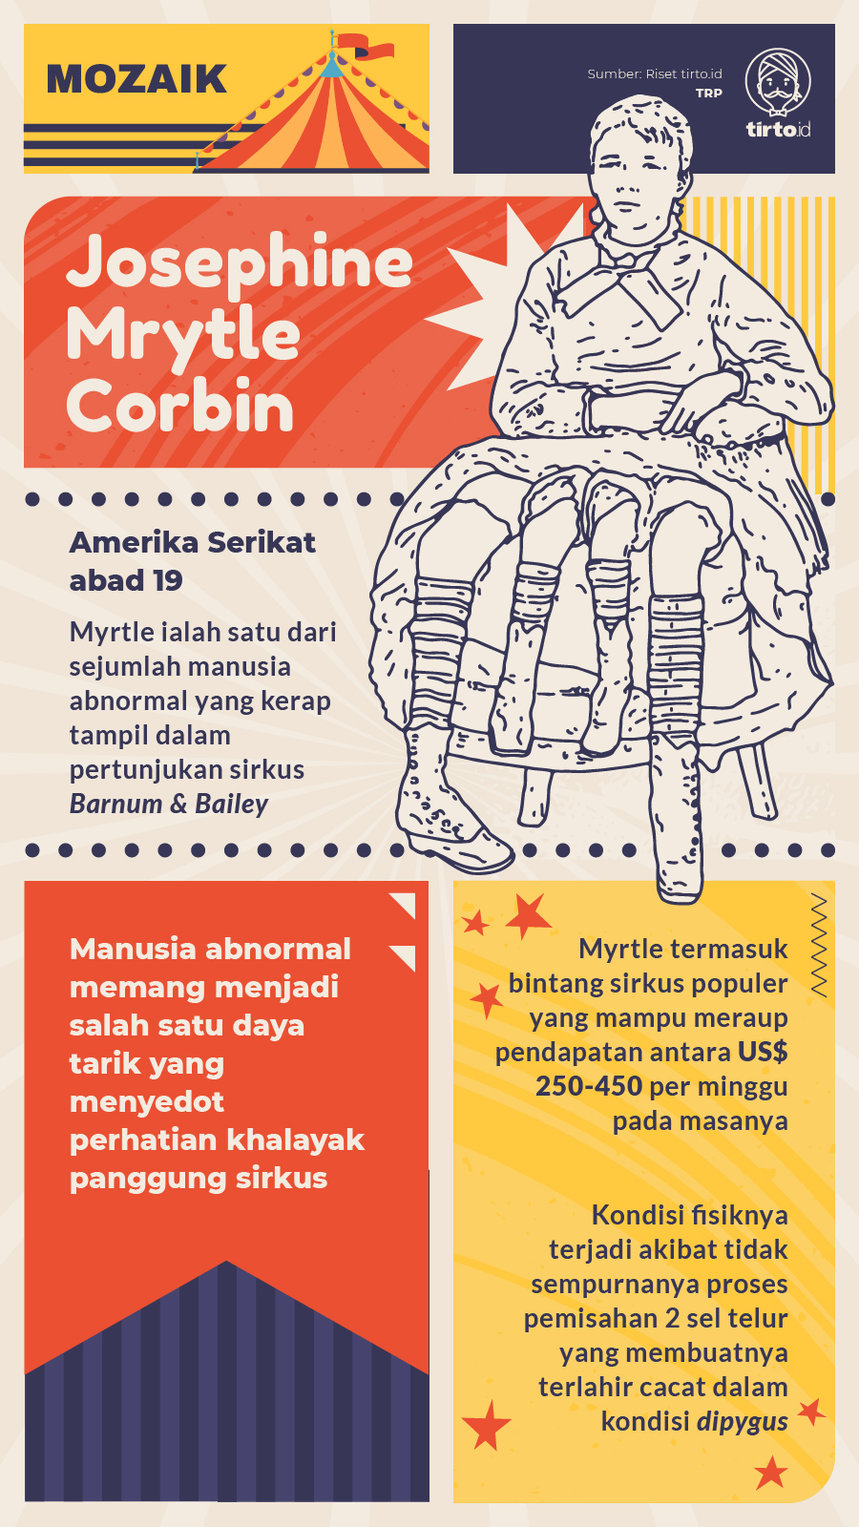 Infografik Mozaik Josephine Mrytle Corbin